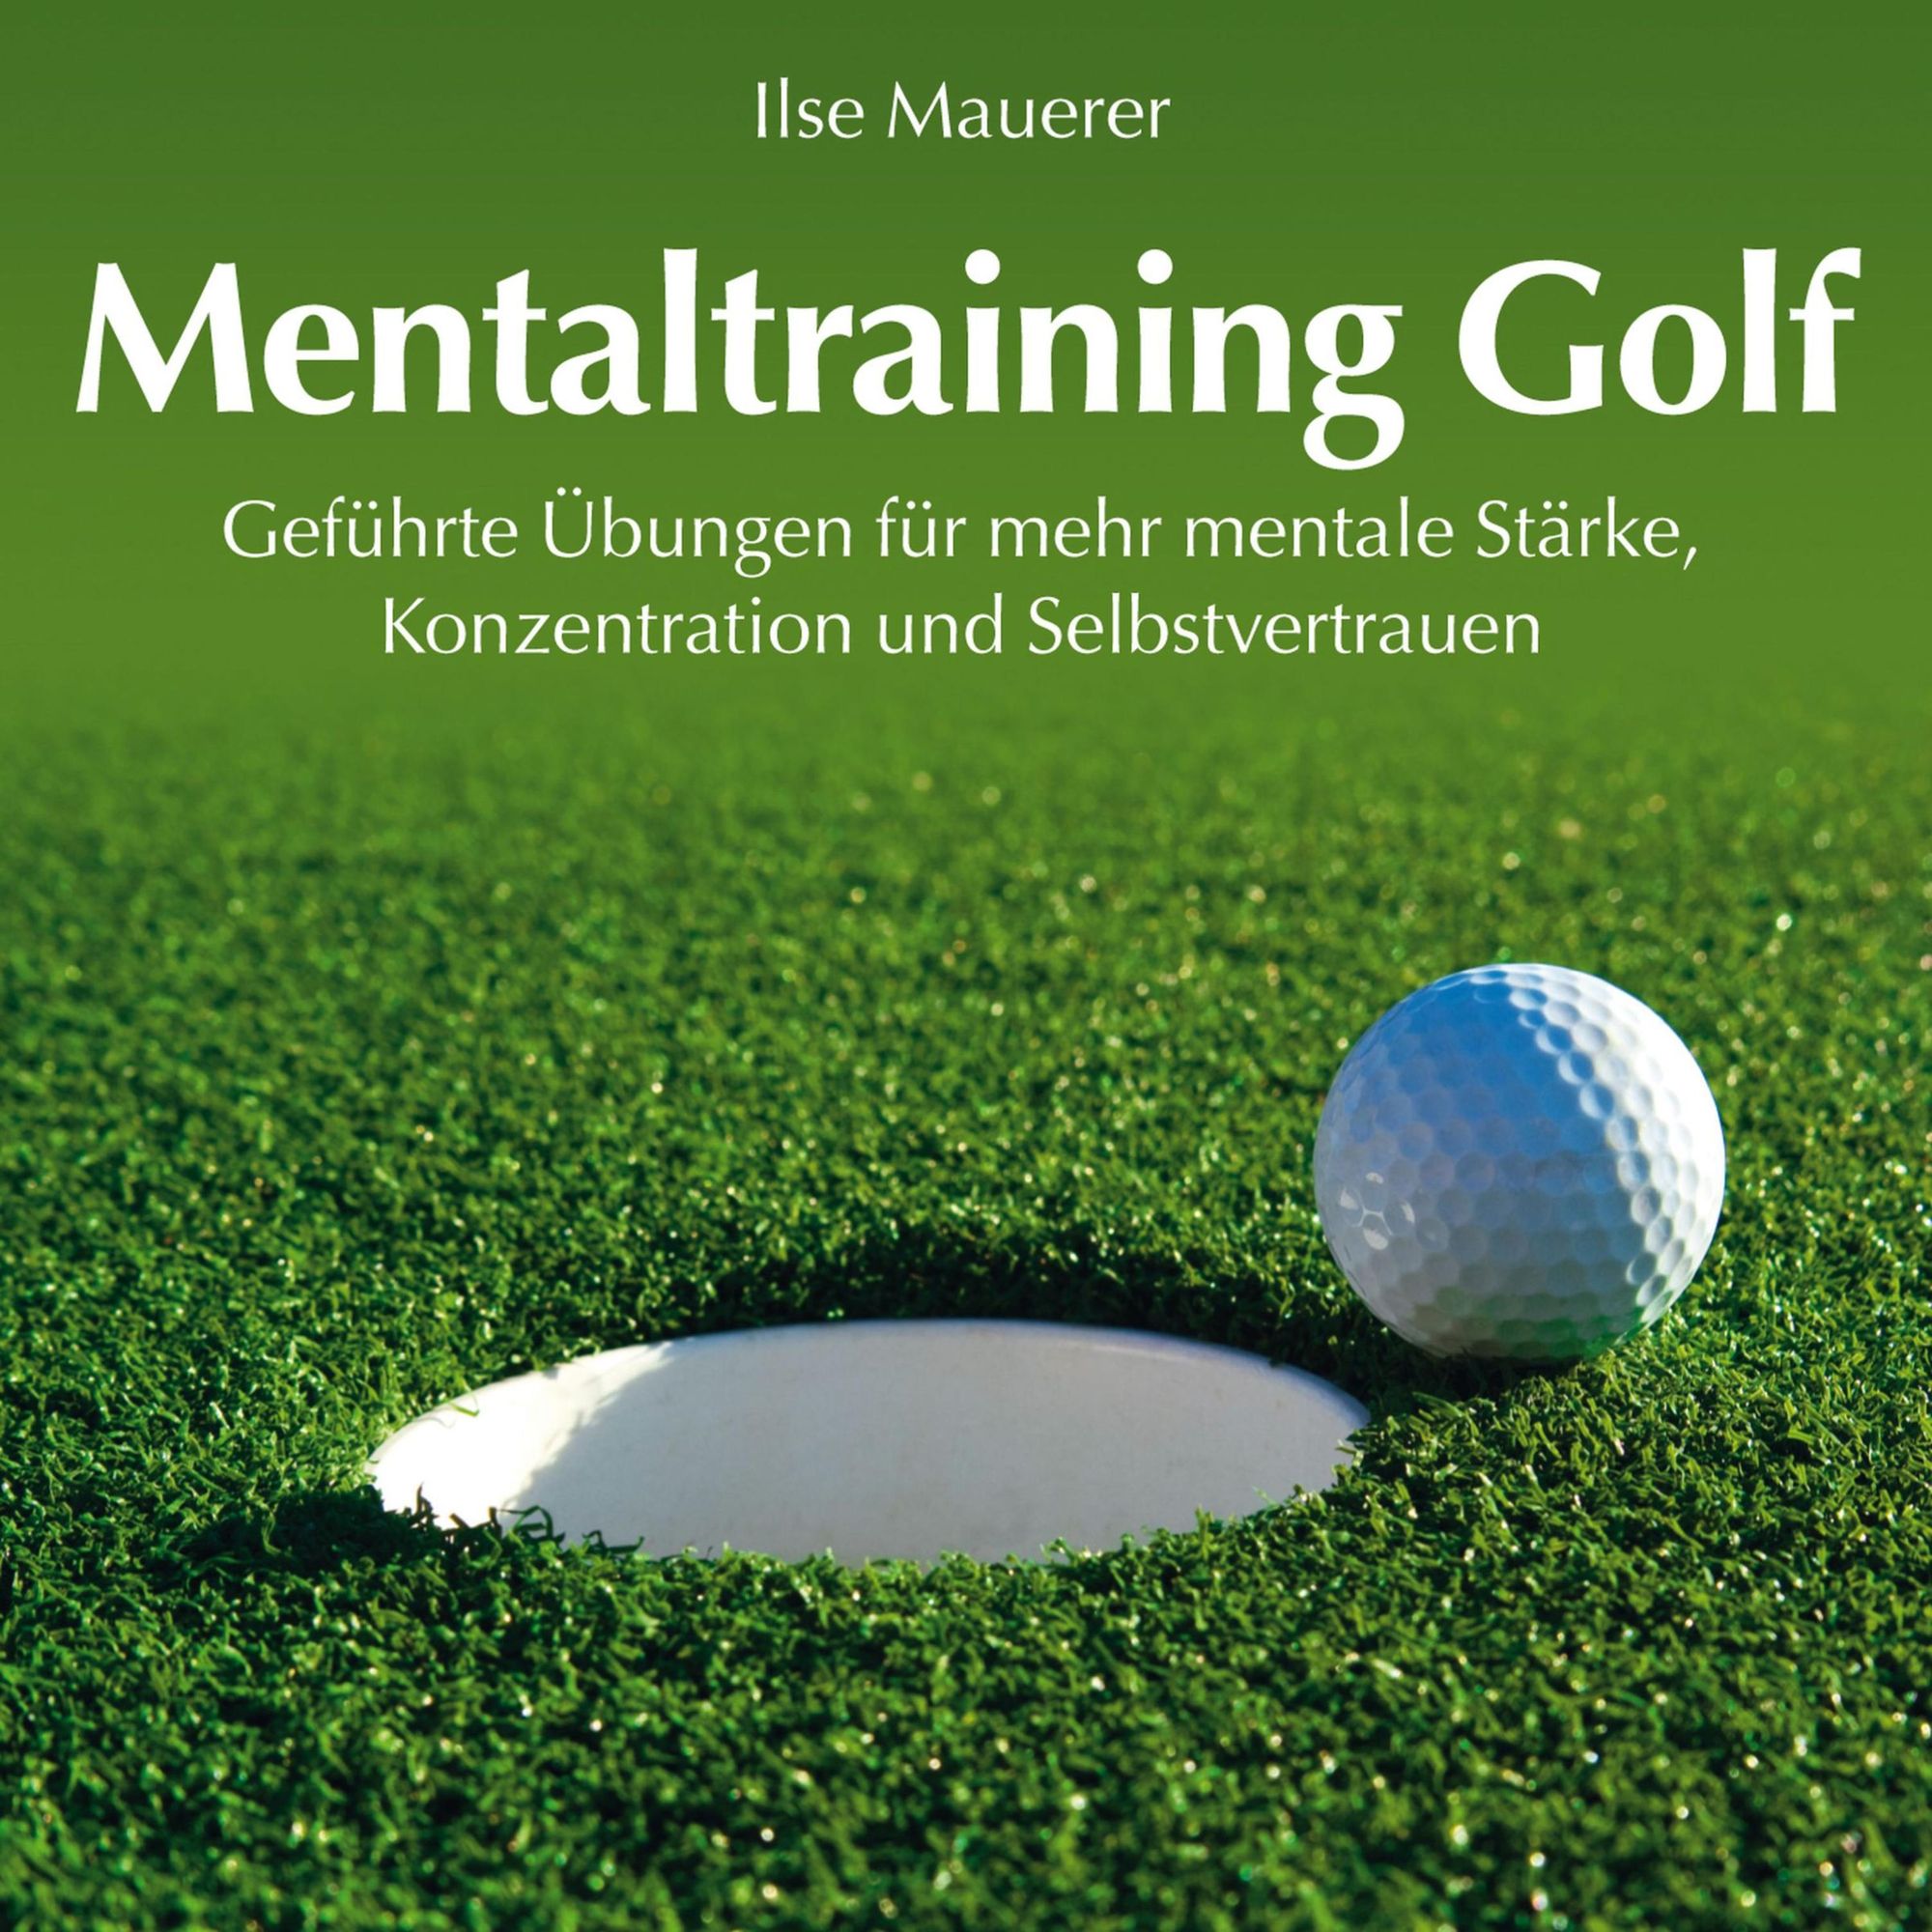 Mentaltraining Golf - Geführte Übungen für mehr mentale Stärke, Konzentration und Selbstvertrauen von Ilse Mauerer